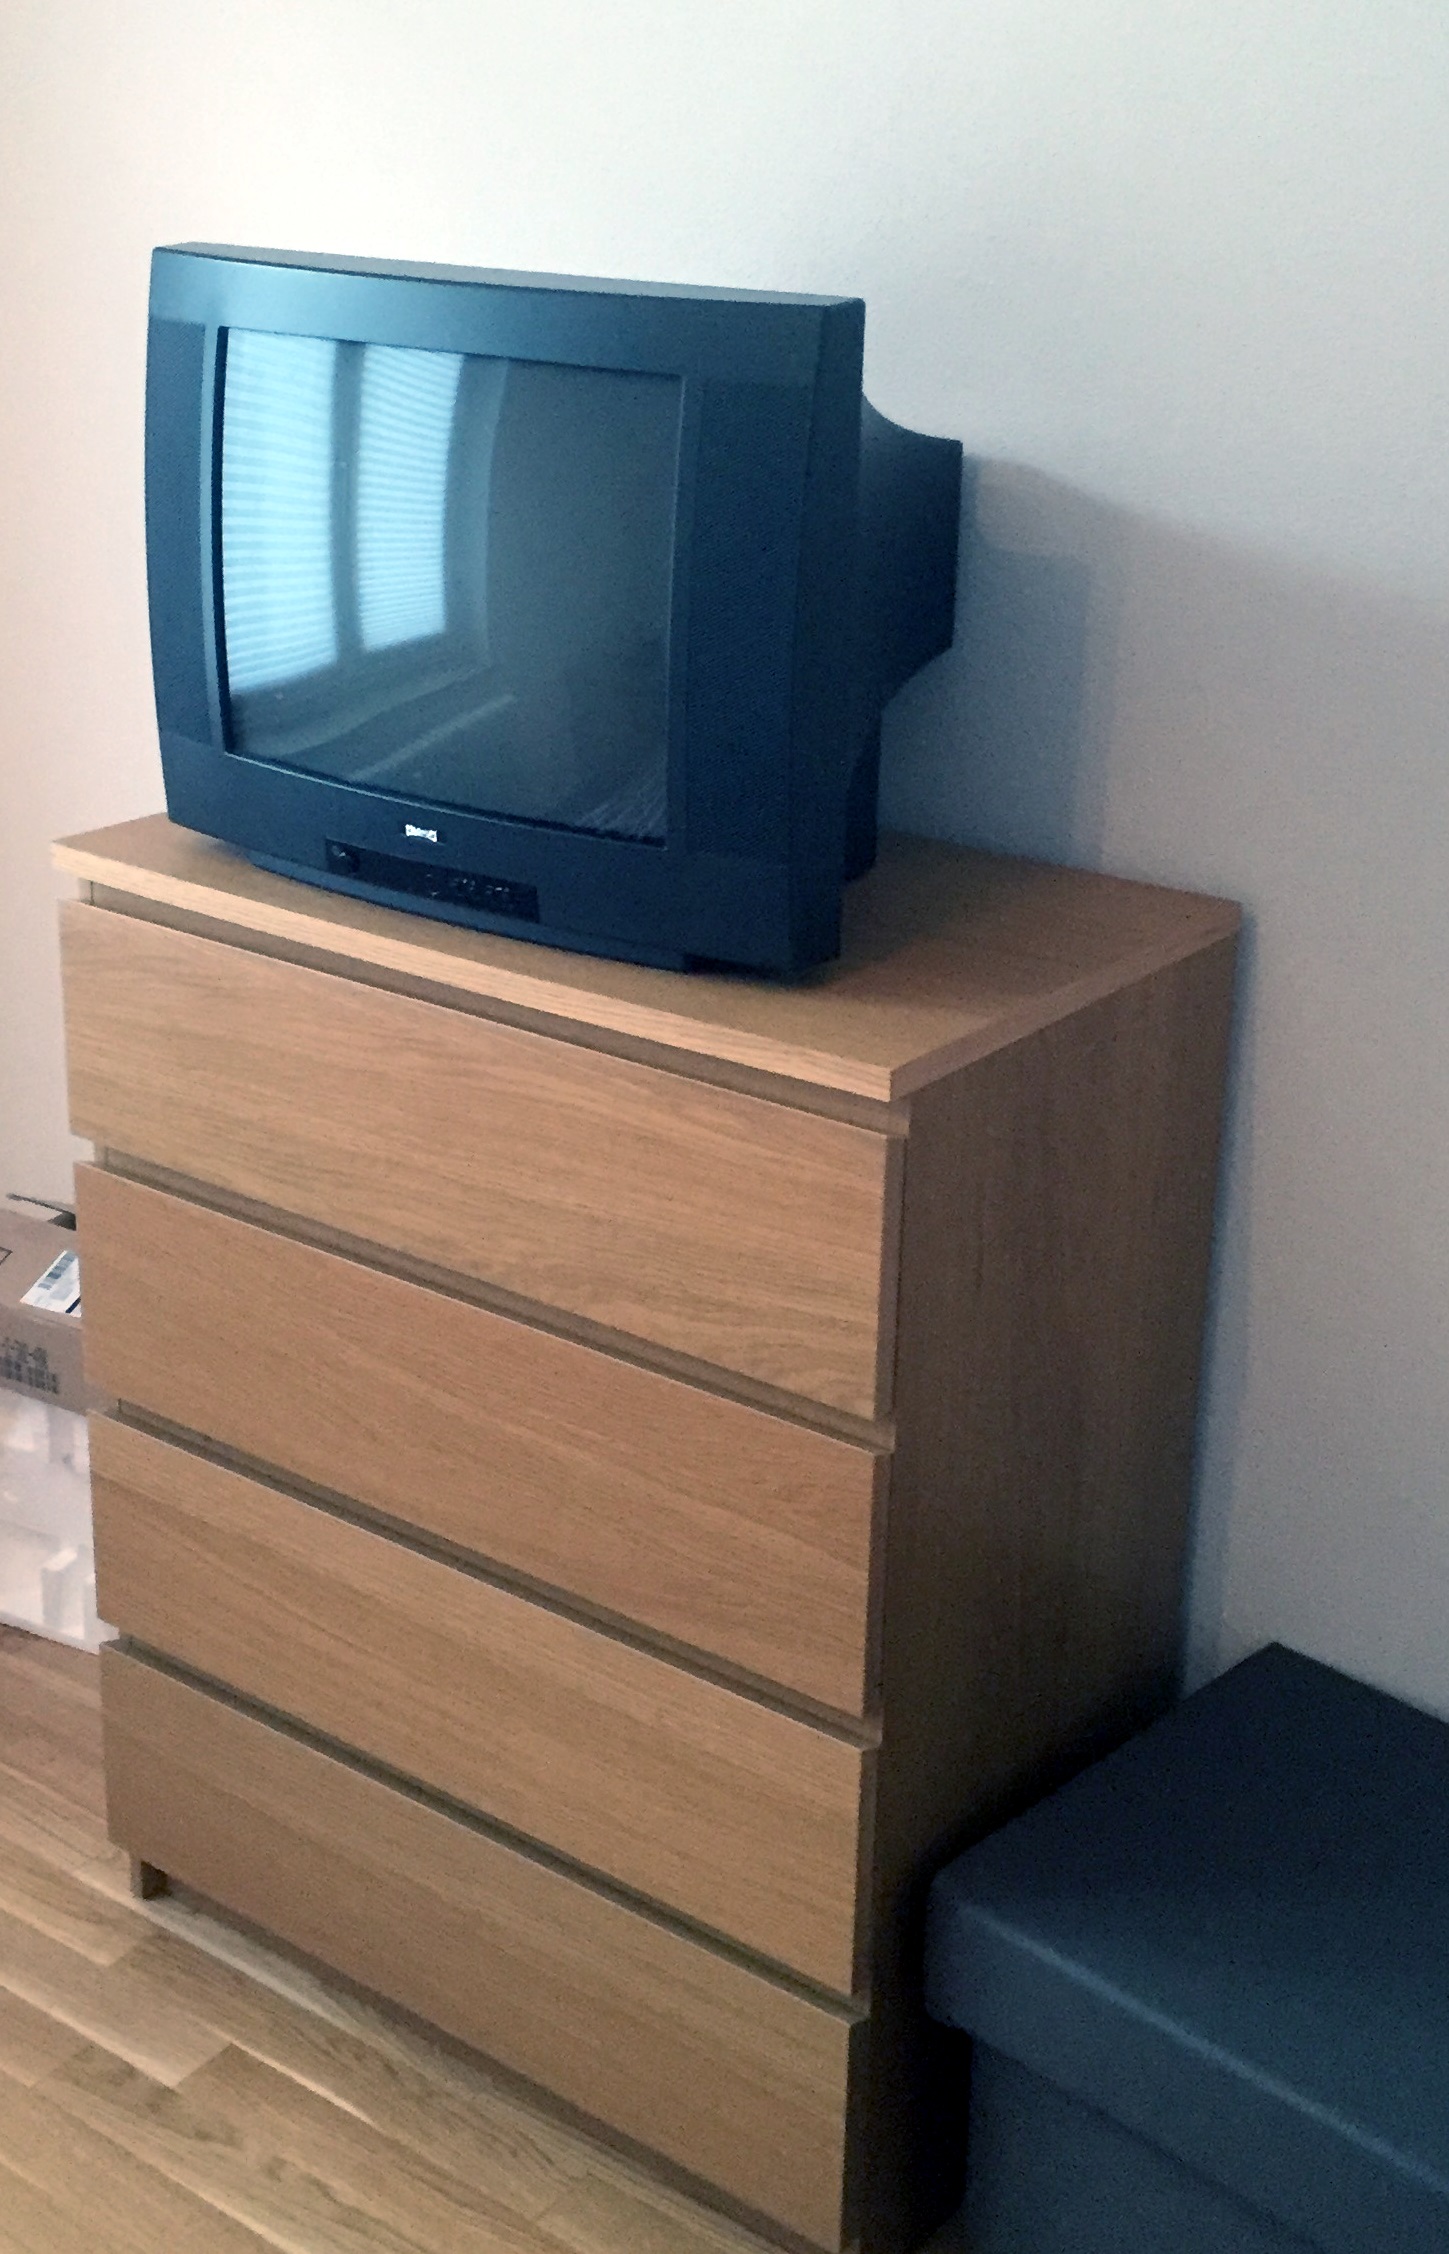 Eine alte Röhre, welche längst einem moderneren Smart TV weichen musste.